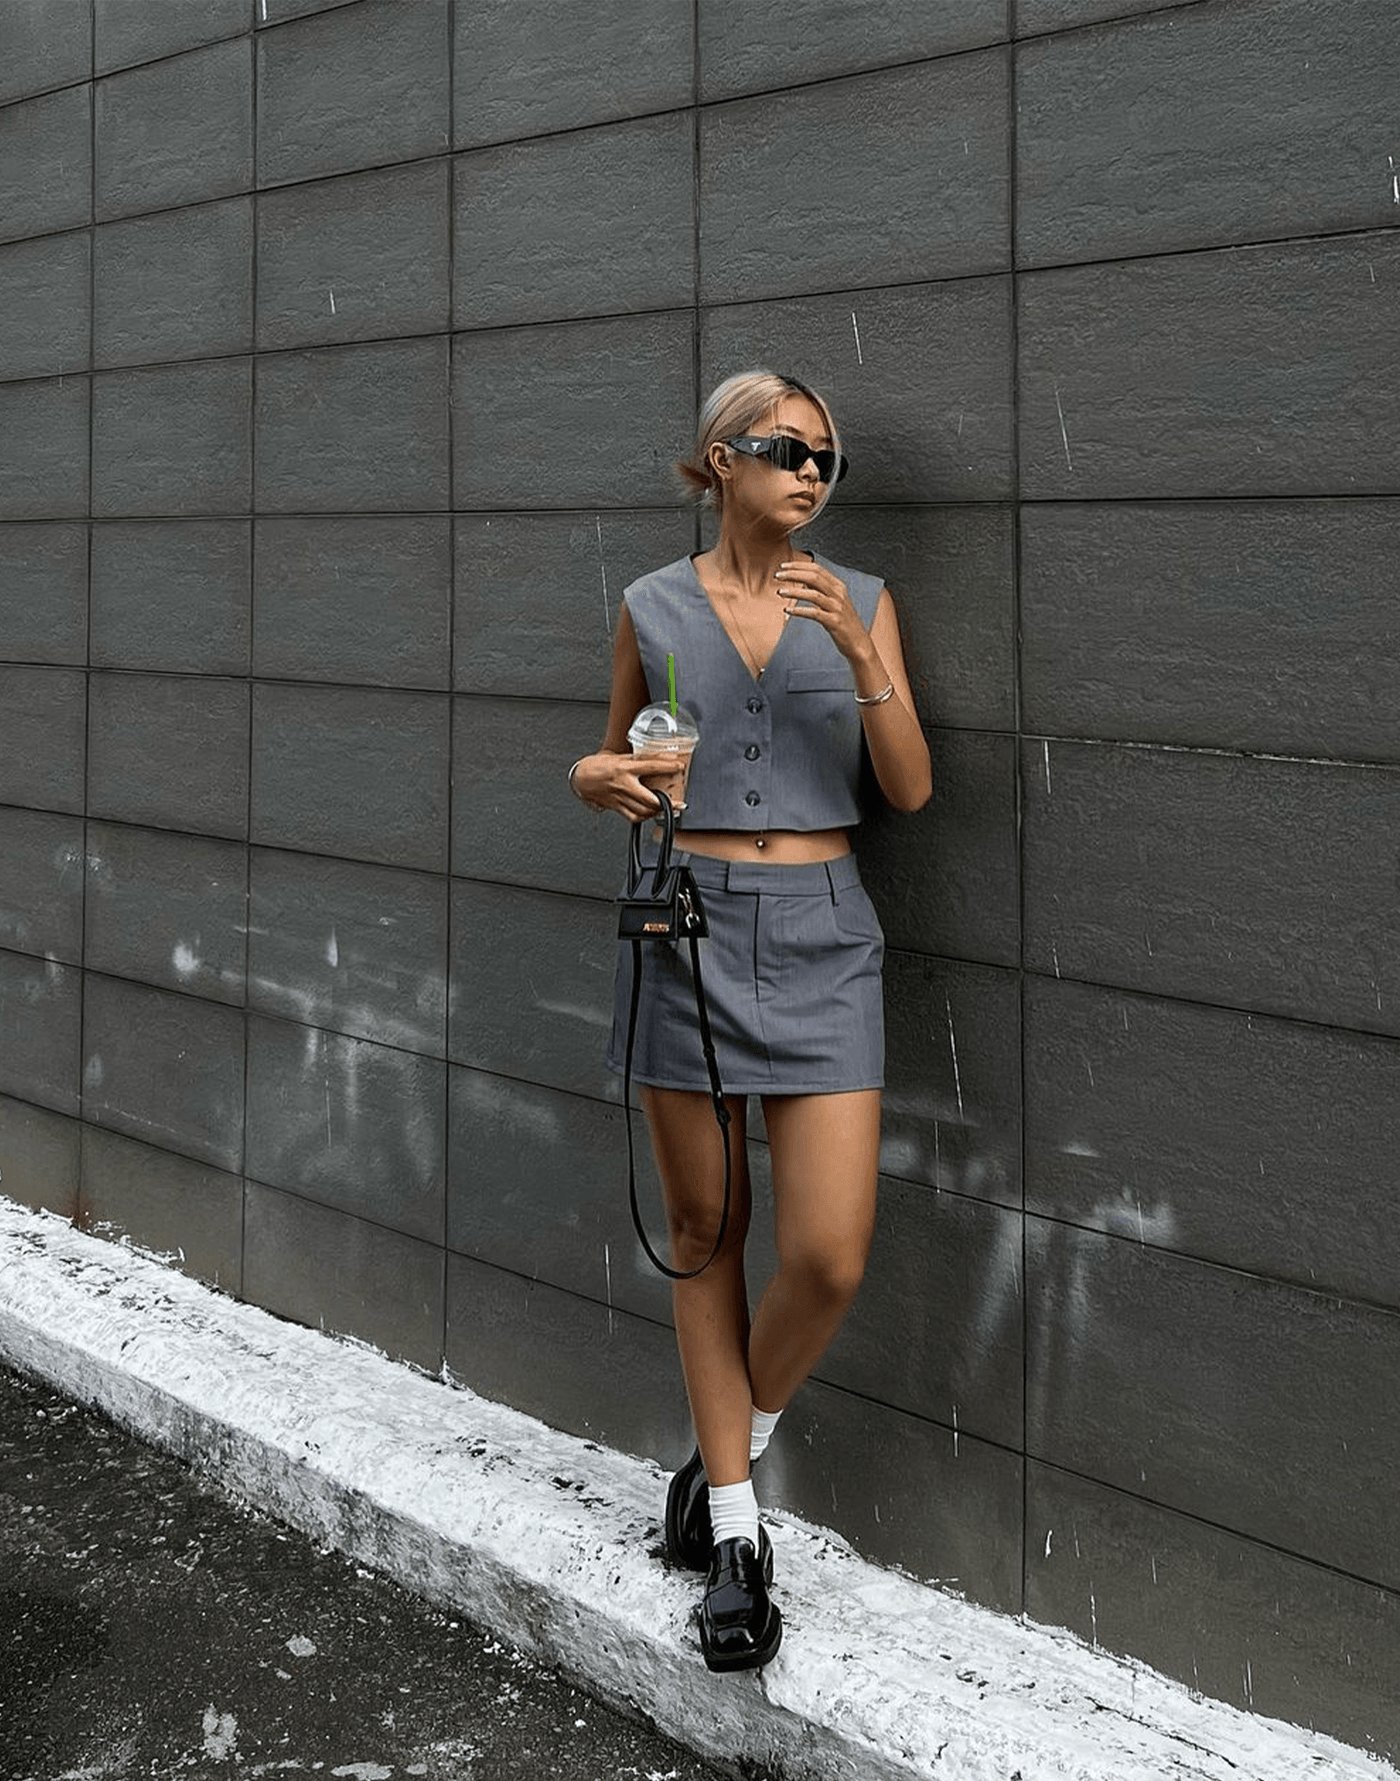 Sidewalk Mini Skirt (Grey) - Tailored Mini Skirt - Women's Skirt - Charcoal Clothing